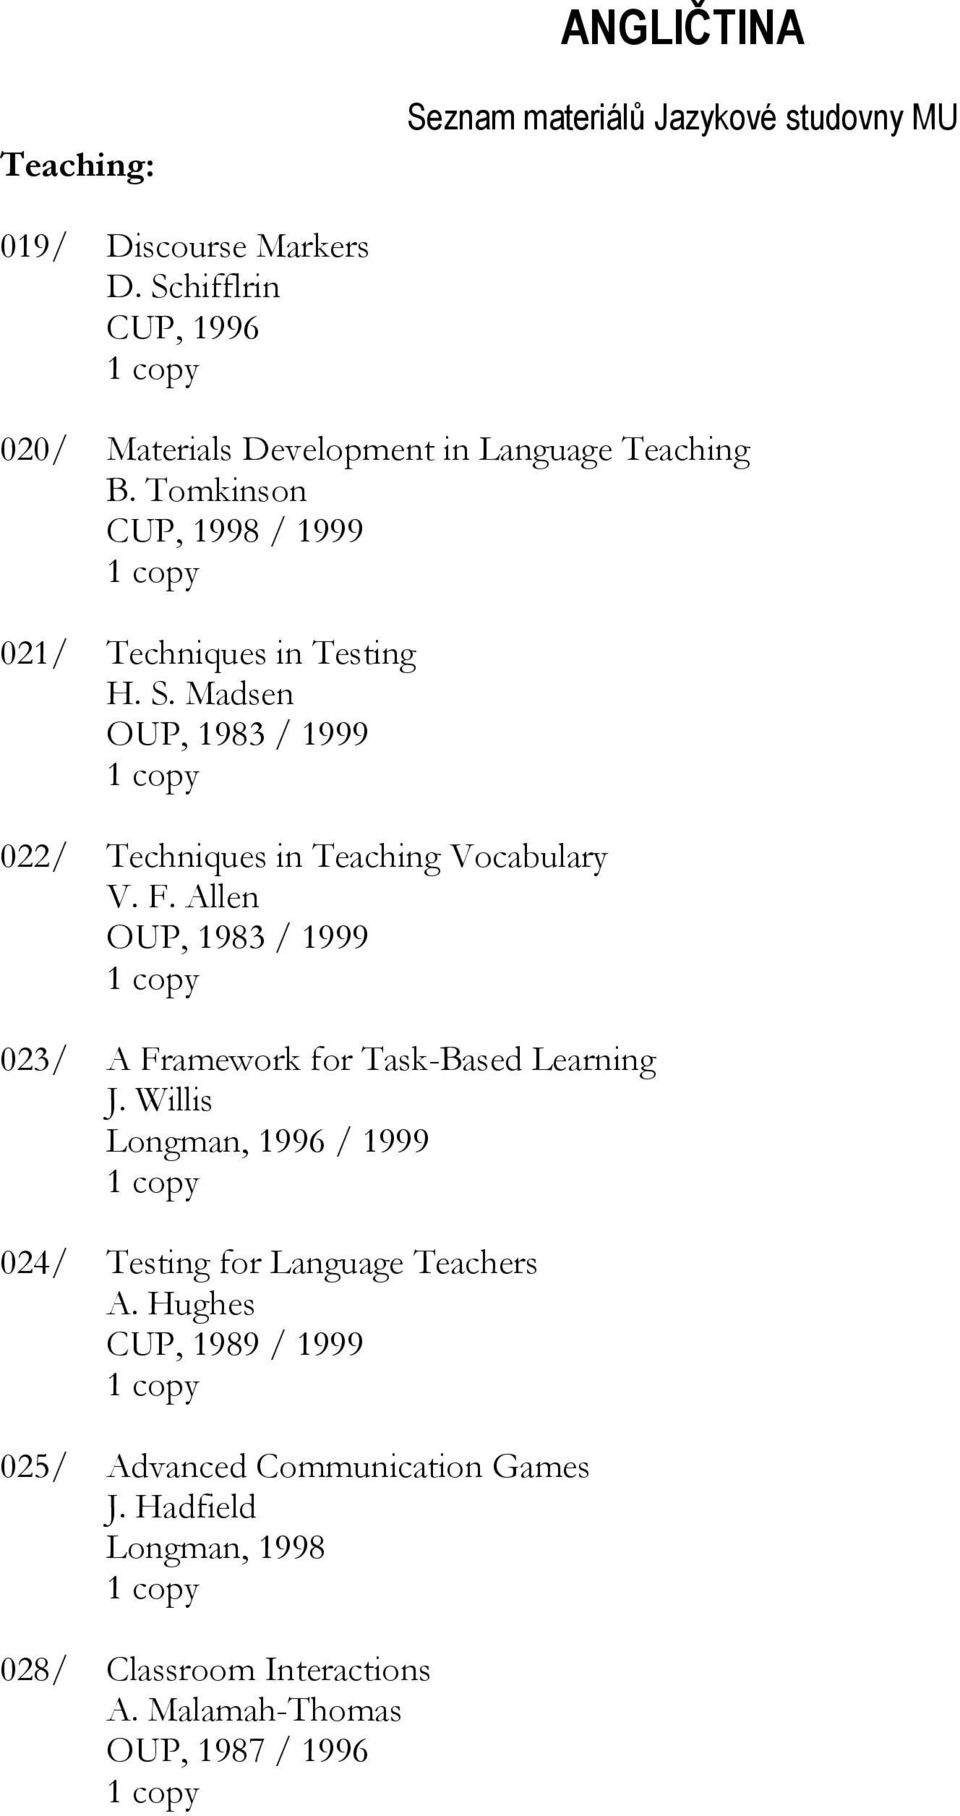 ANGLIČTINA. Seznam materiálů Jazykové studovny MU - PDF Stažení zdarma